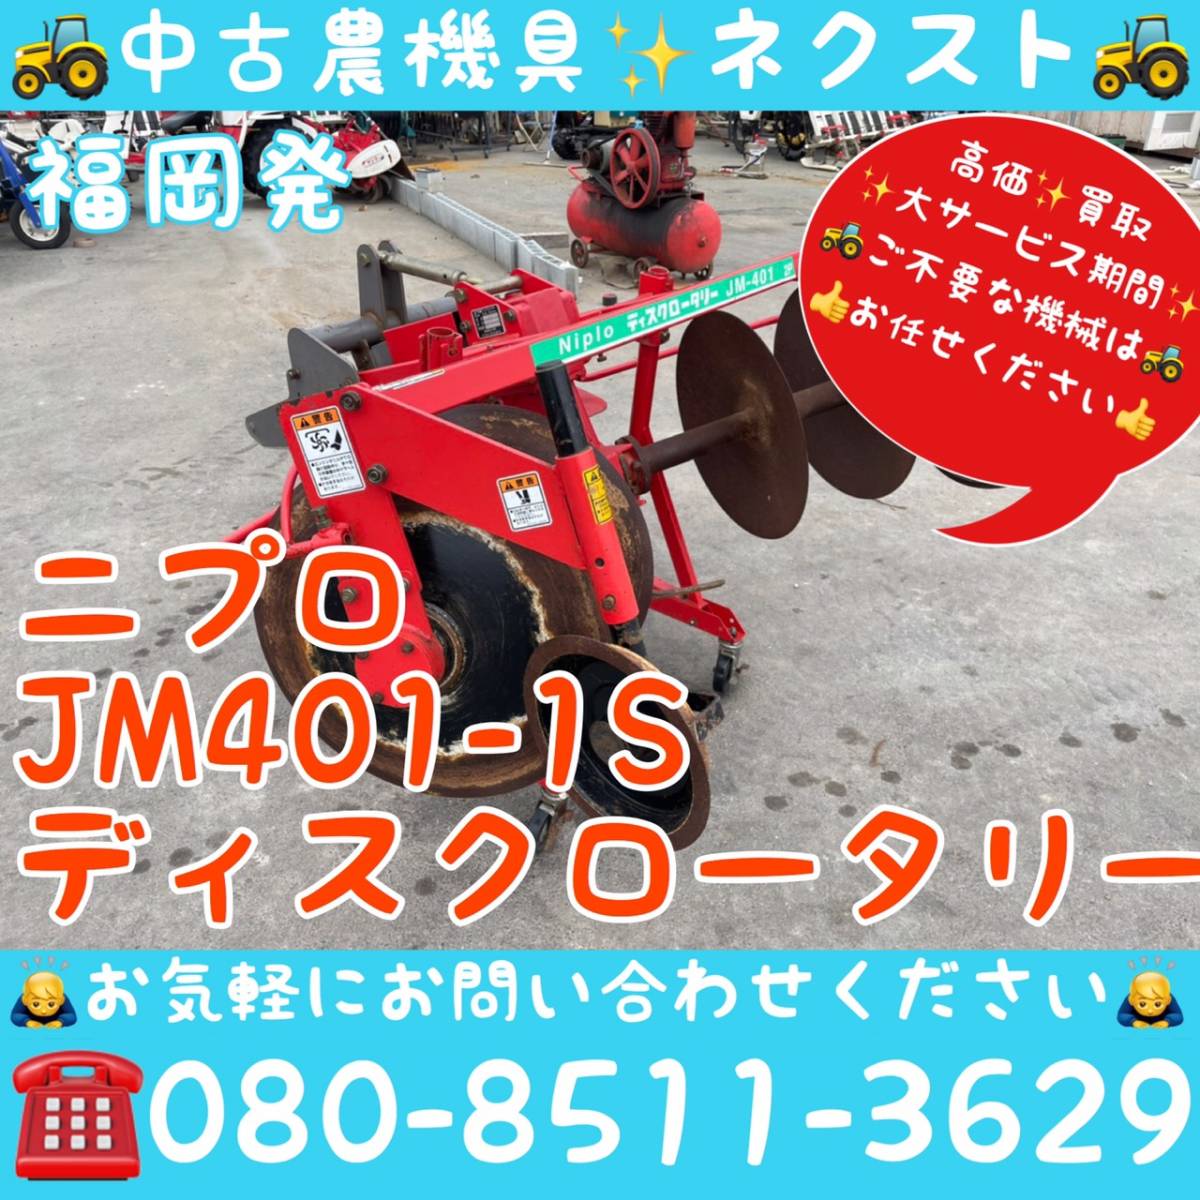 ニプロ JM401-1S ディスクロータリー トラクター パーツ 福岡県発 - 農業